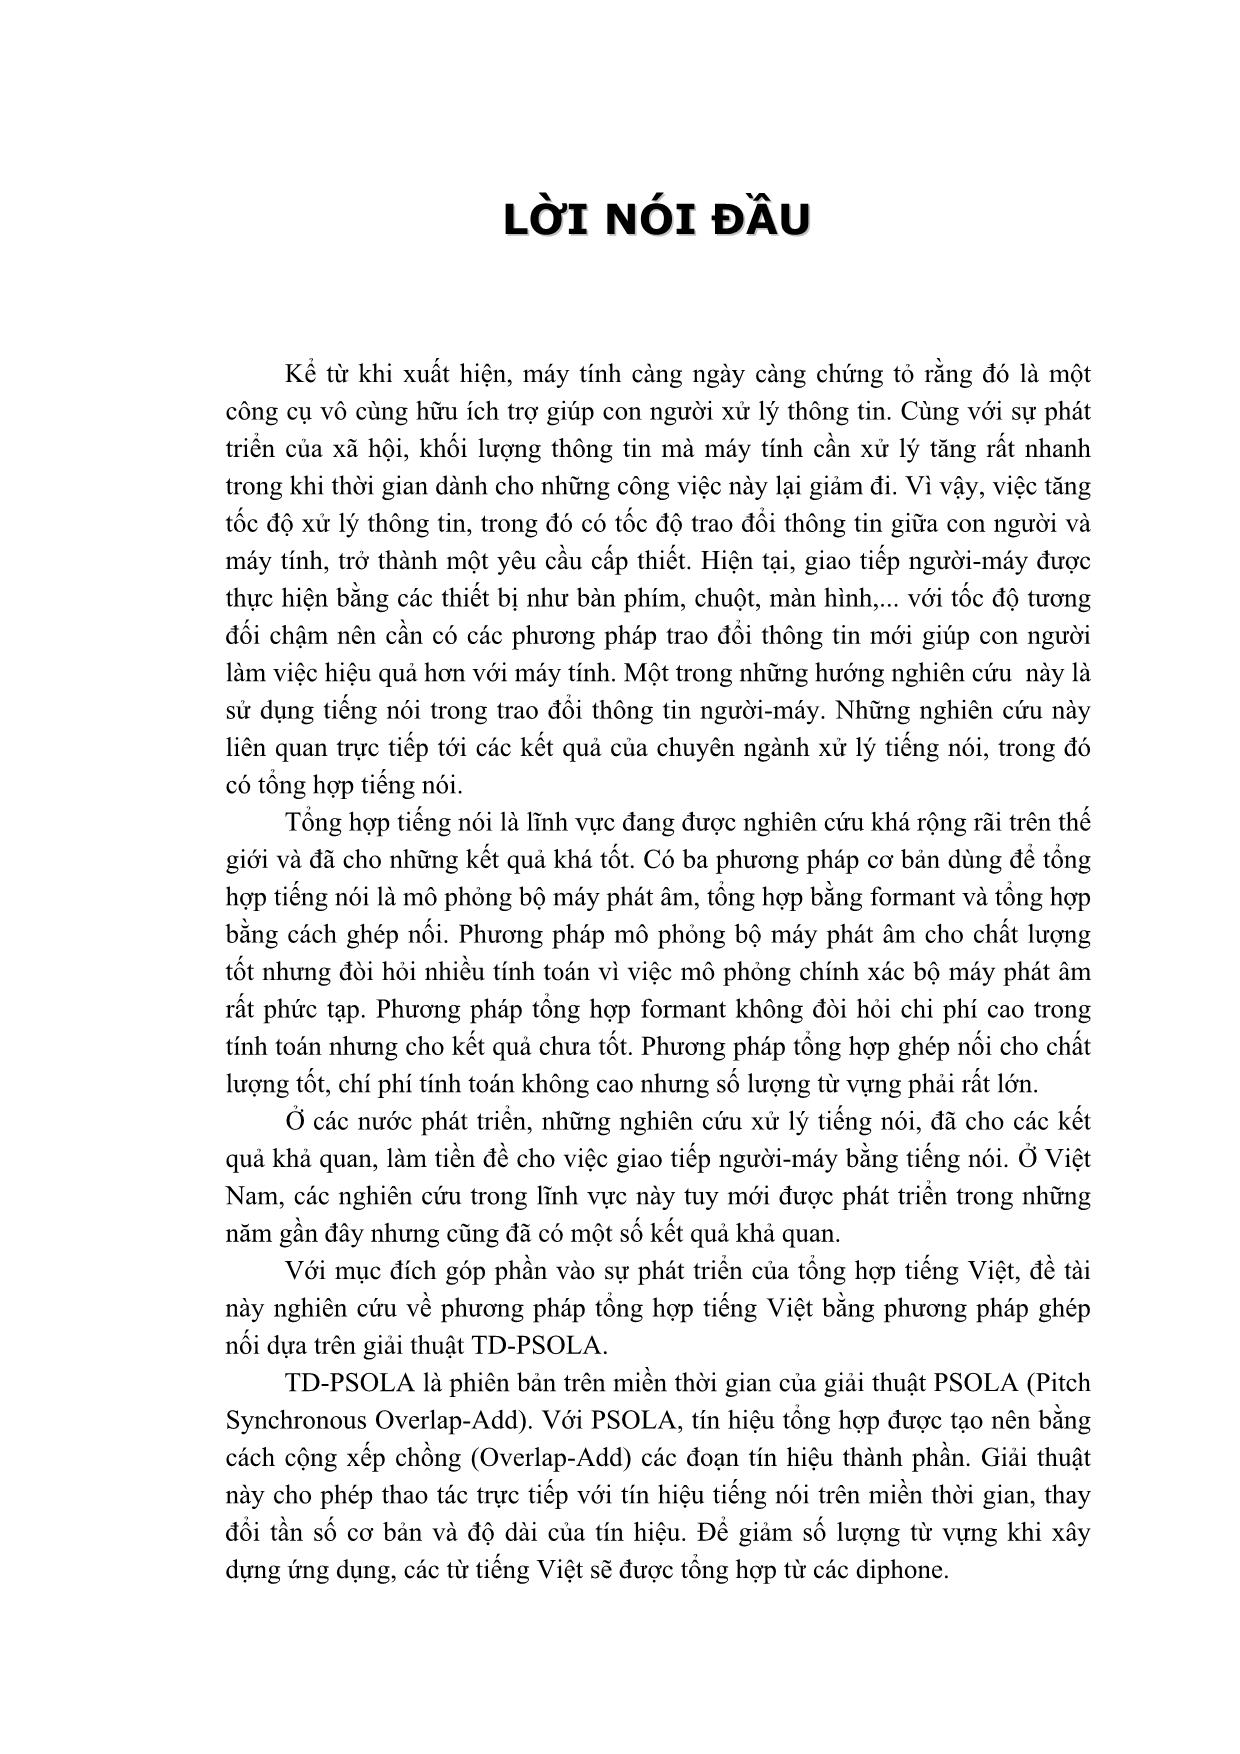 Luận văn Tổng hợp tiếng Việt bằng giải thuật TD-PSOLA trang 1